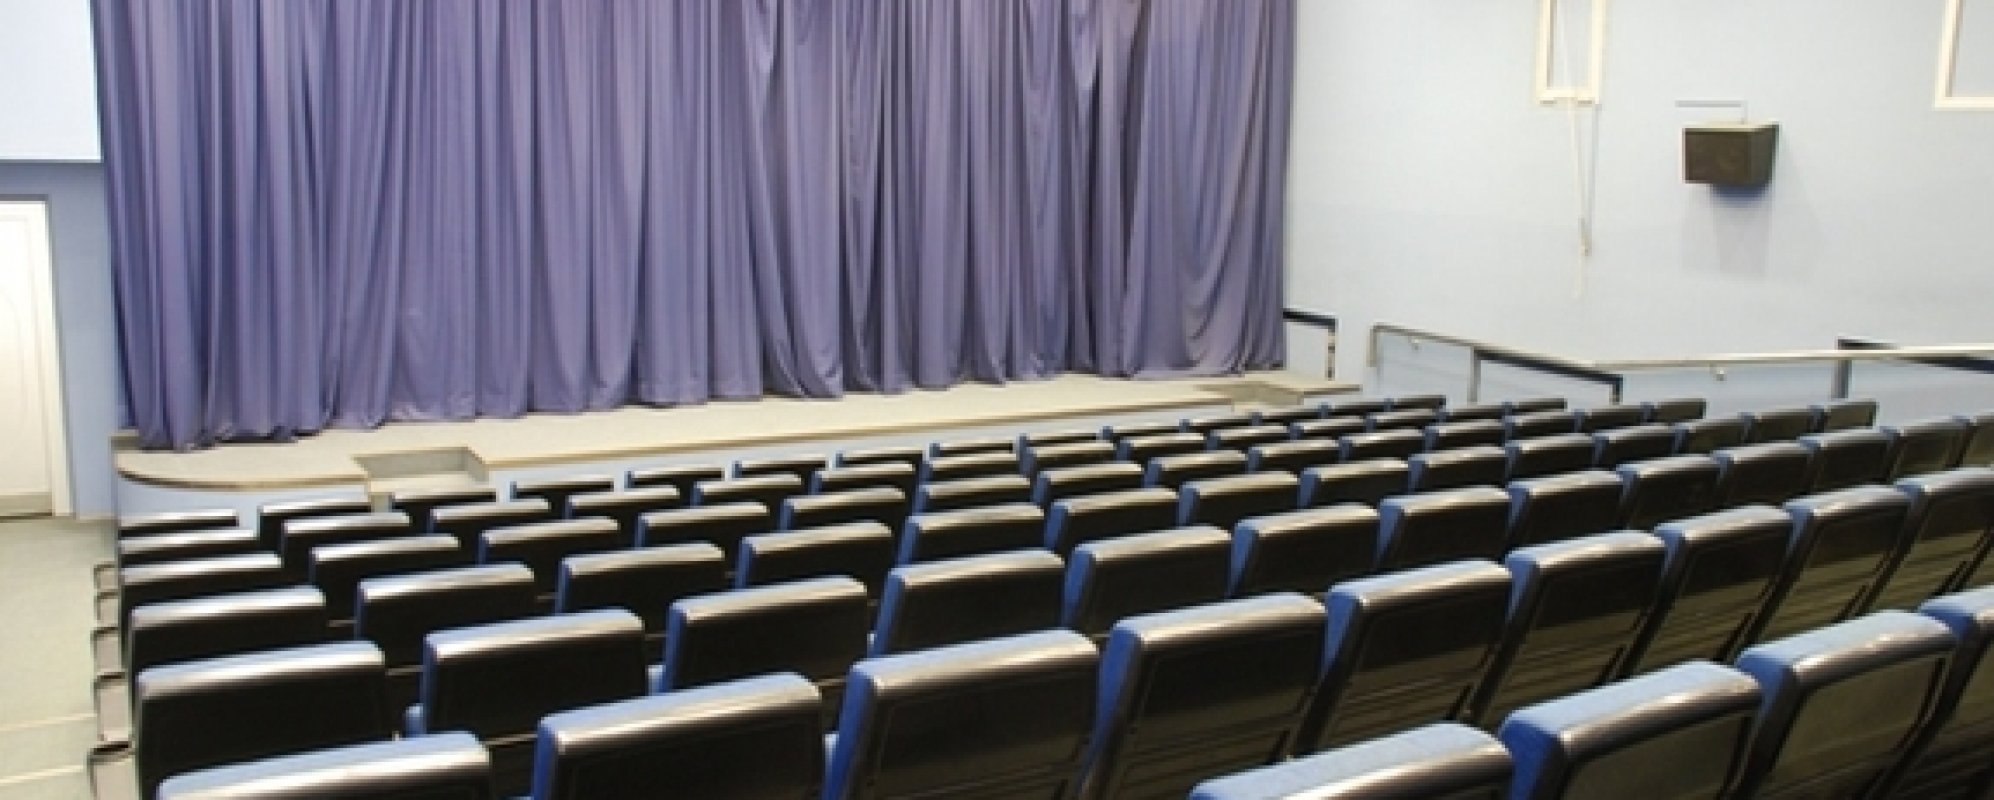 Фотографии концертного зала Киноконцертный театр Космос Синий зал